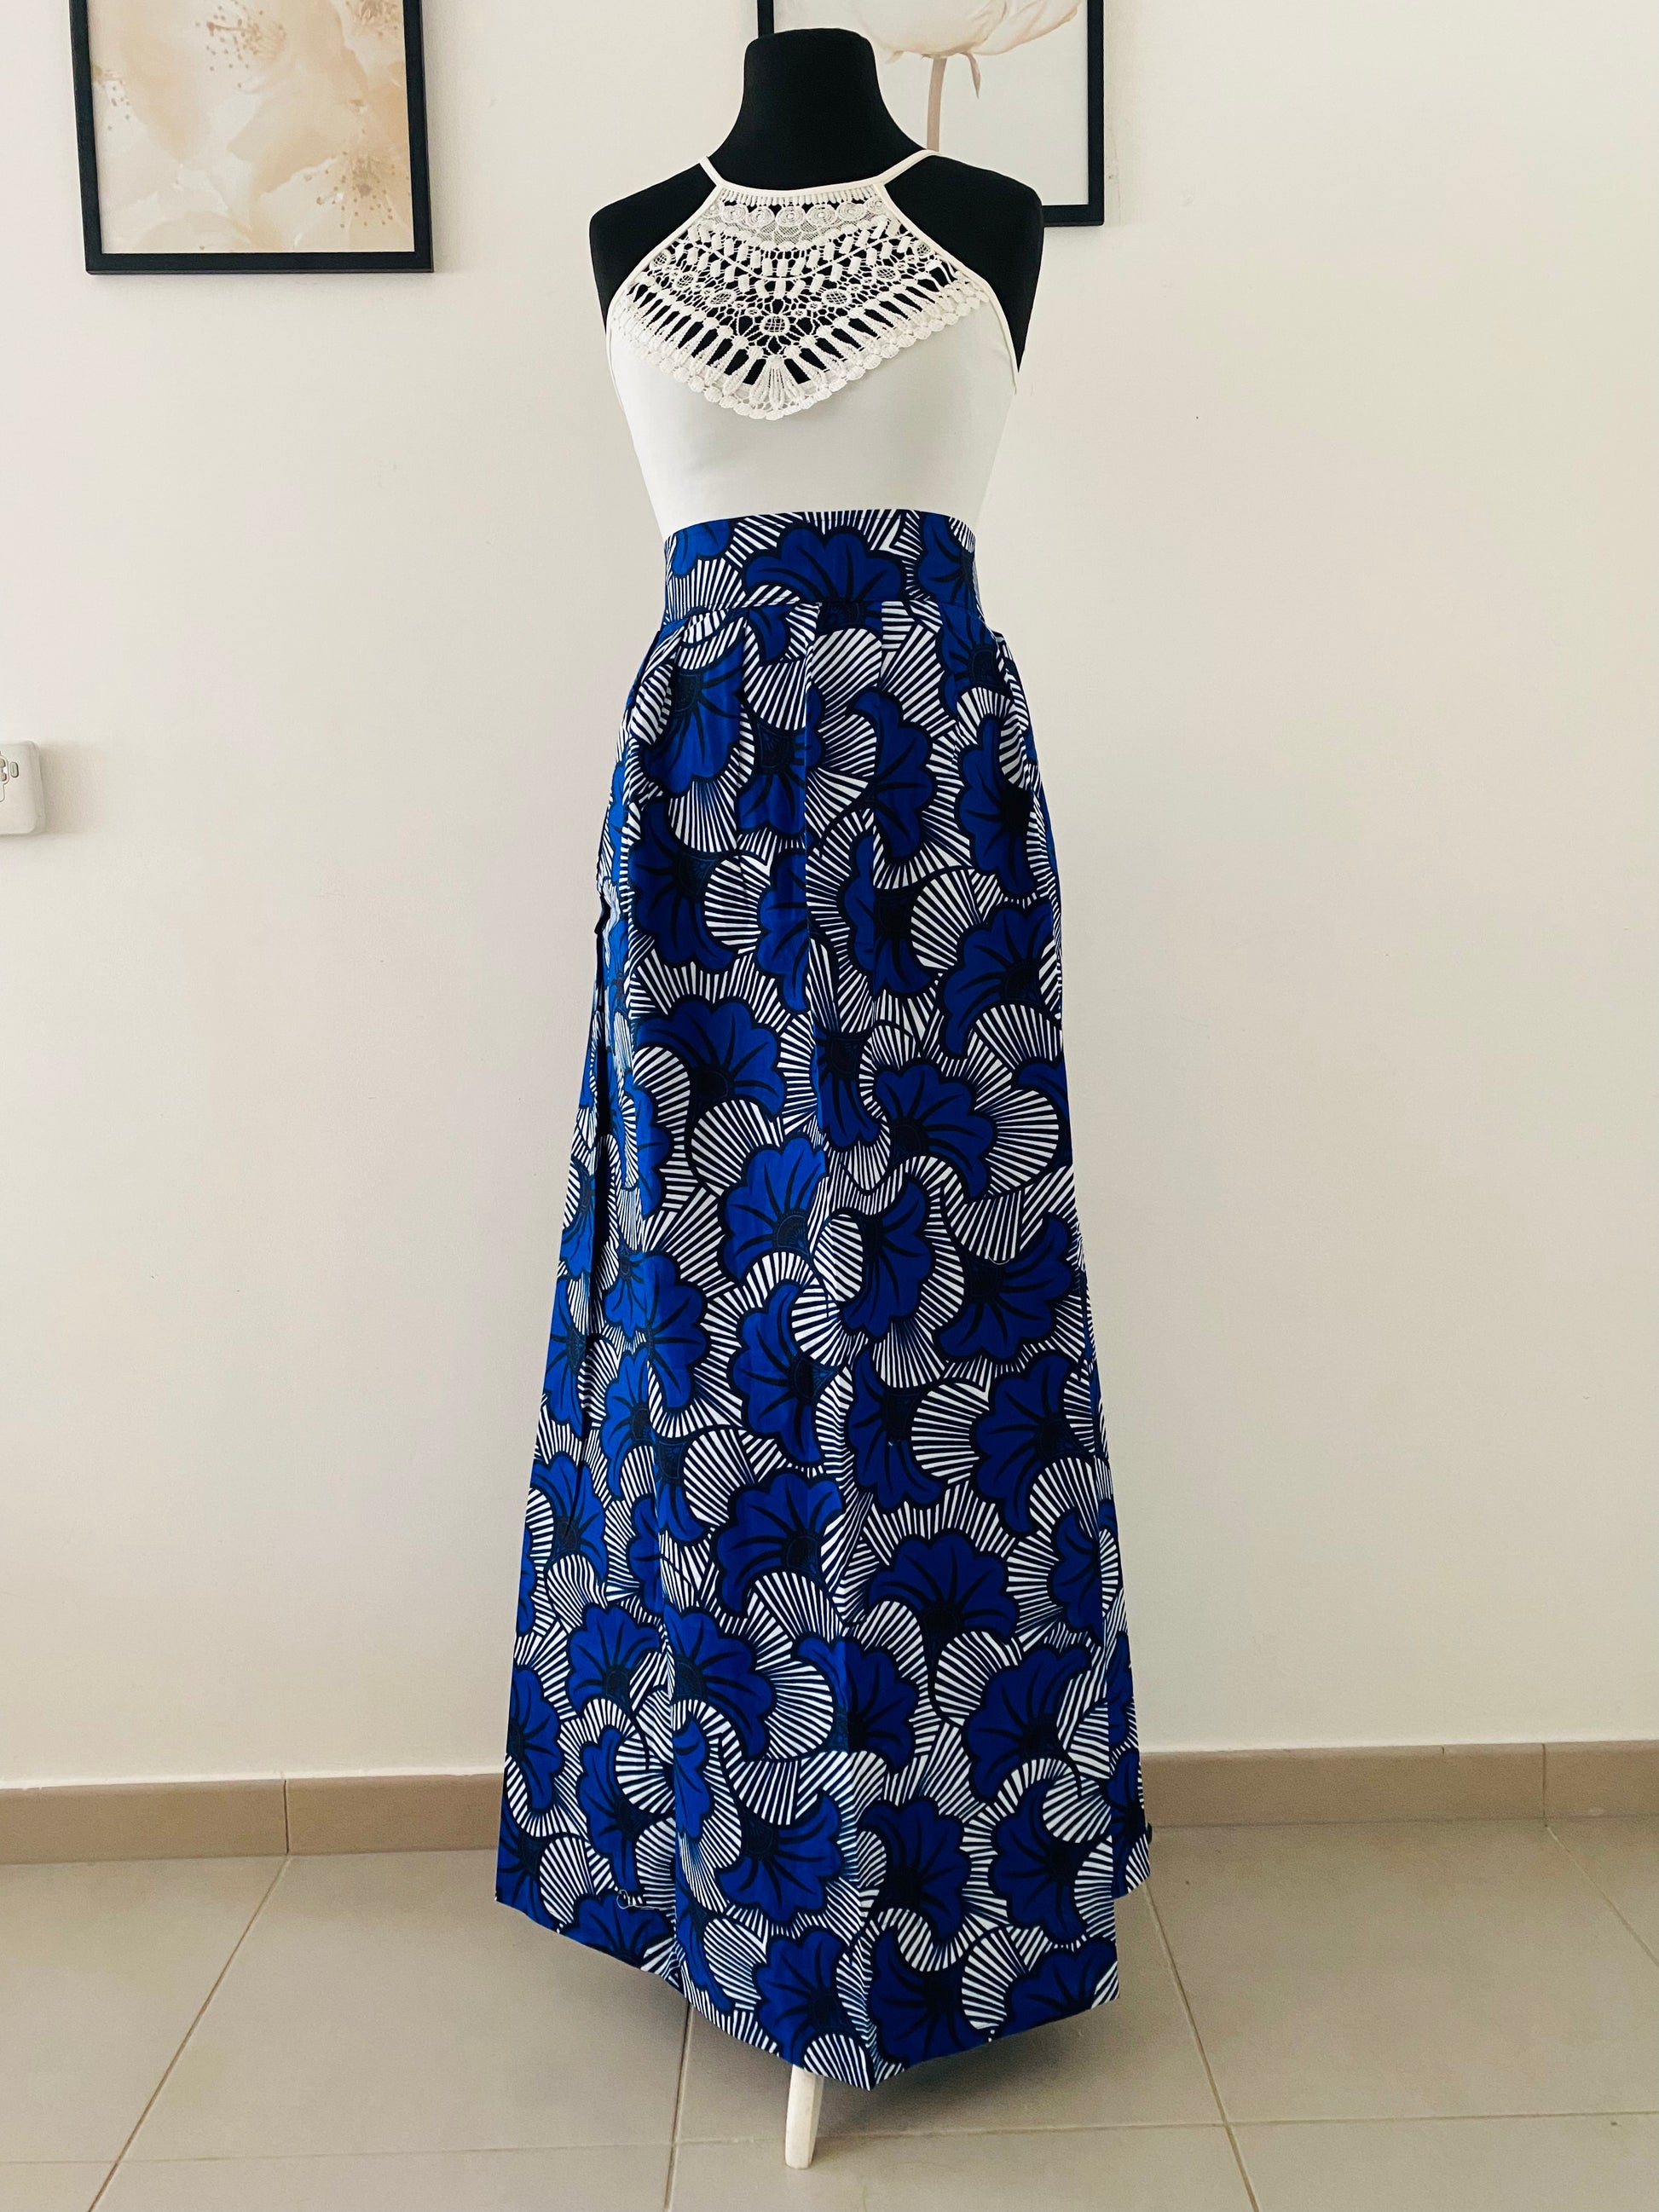 Jupe maxi en Wax - jupe africaine taille haute - tissu Wax fleurs de m –  Kaysol Couture